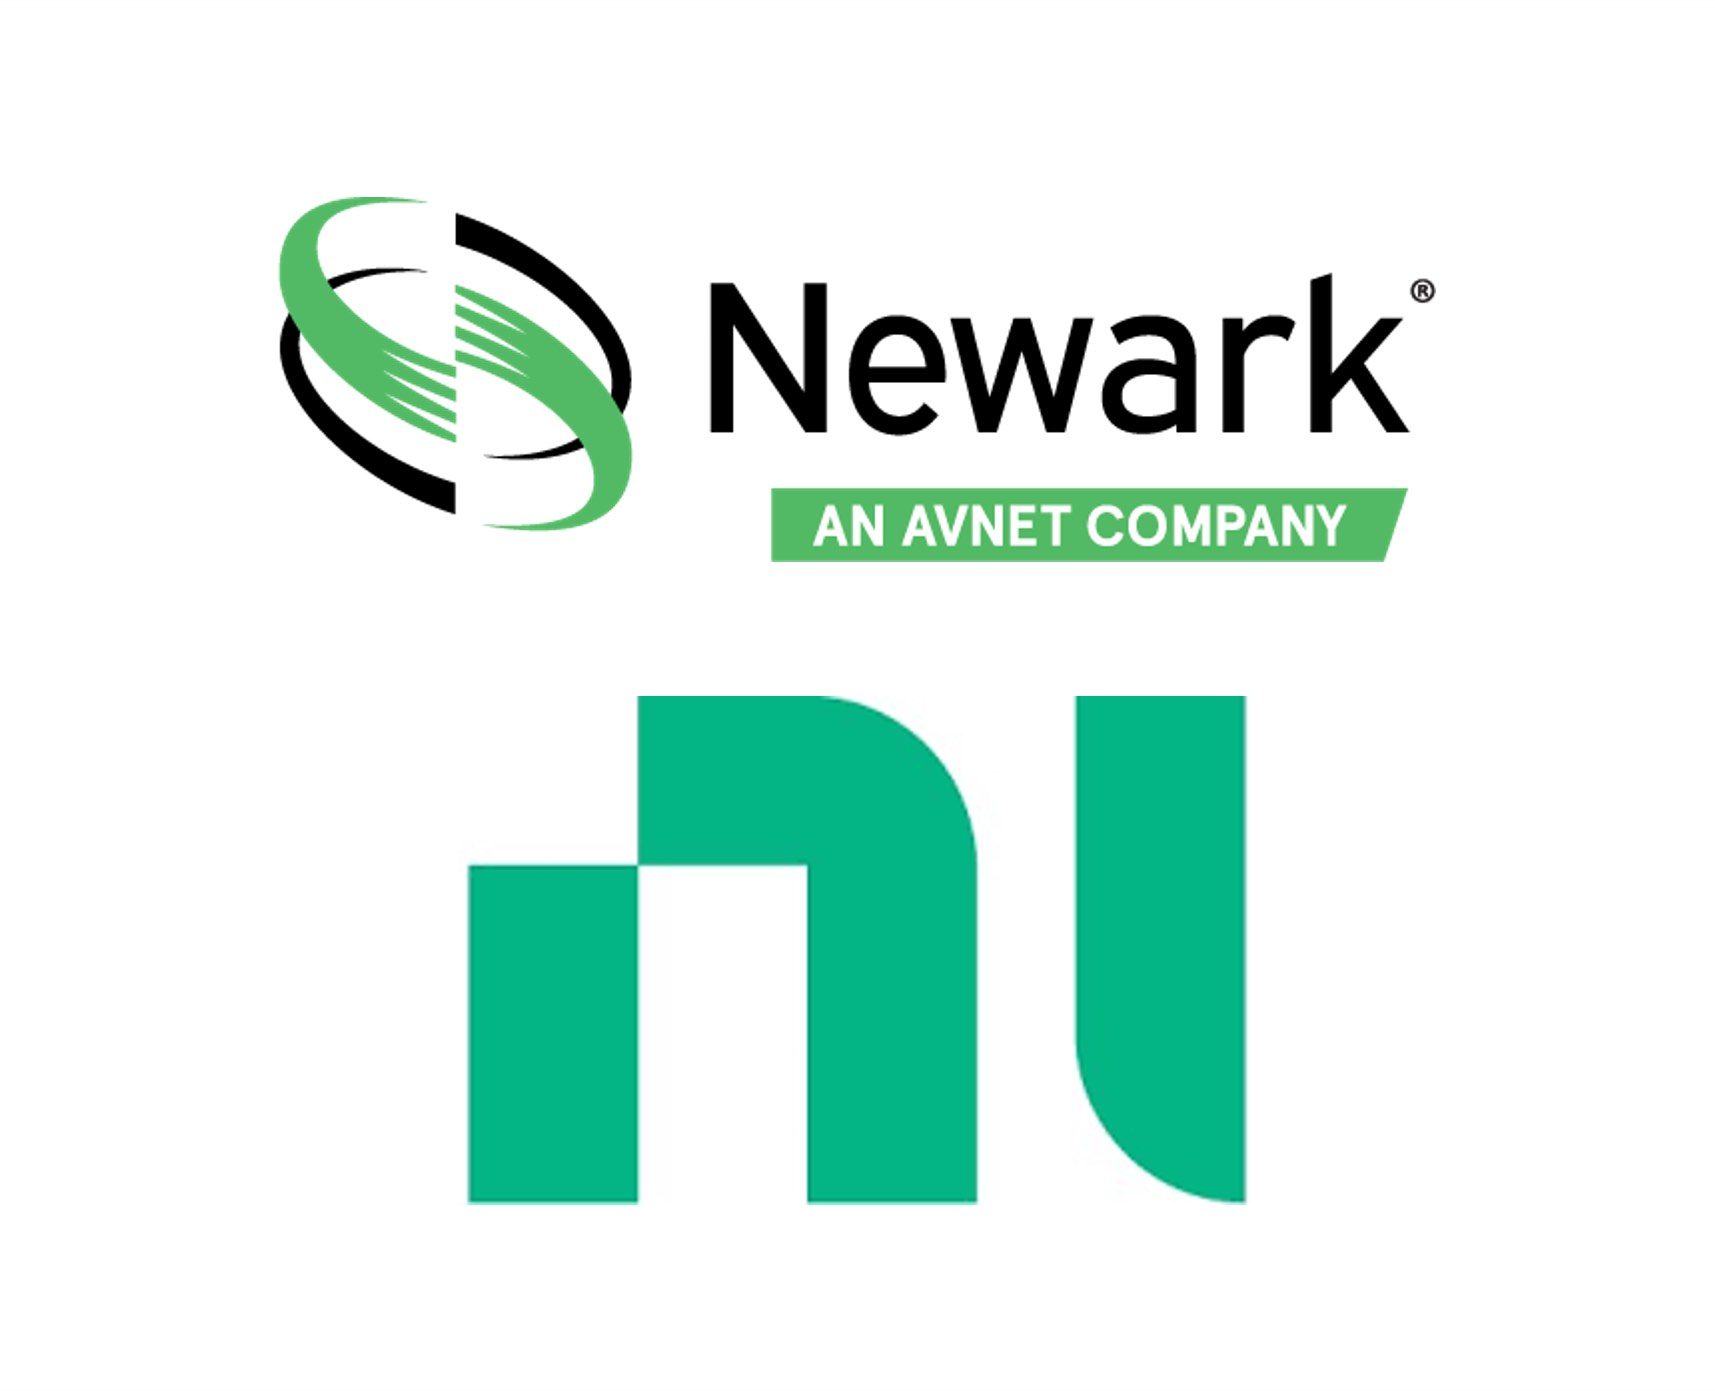 Newark se convierte en la distribuidora oficial para NI en todos los países de América Latina